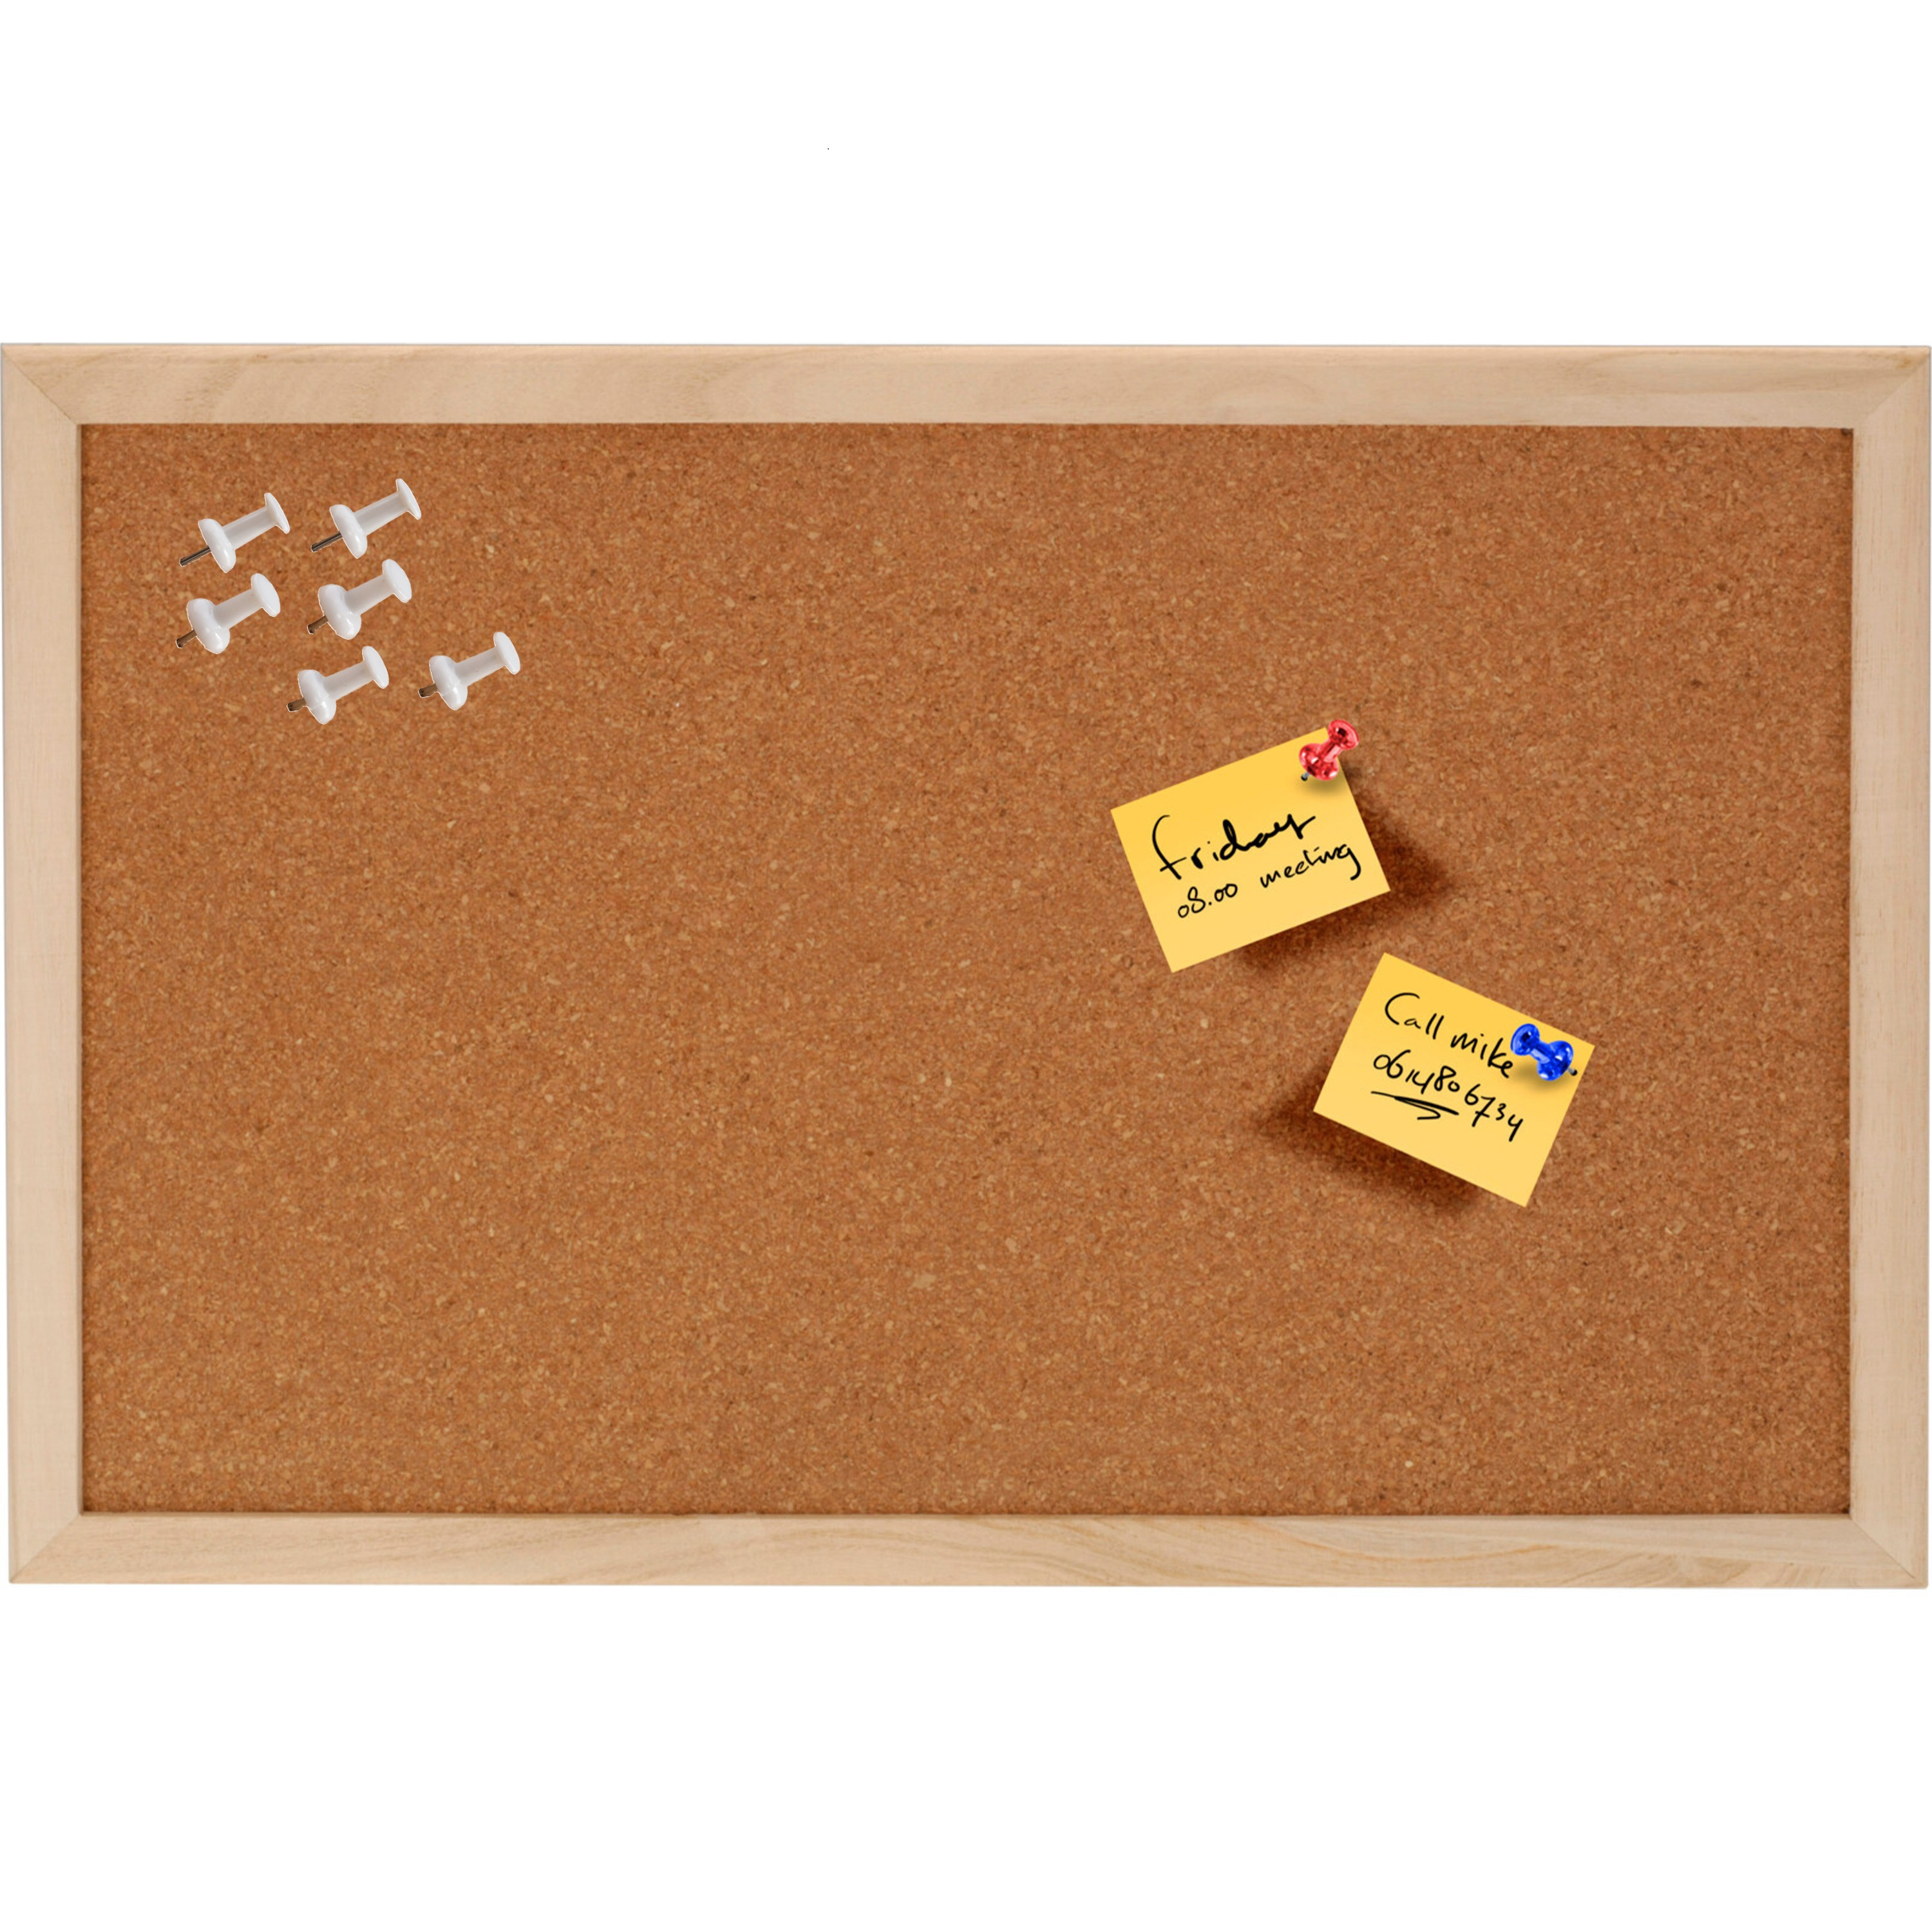 Prikbord van kurk 45 x 30 cm inclusief 25x witte punt punaises memobord